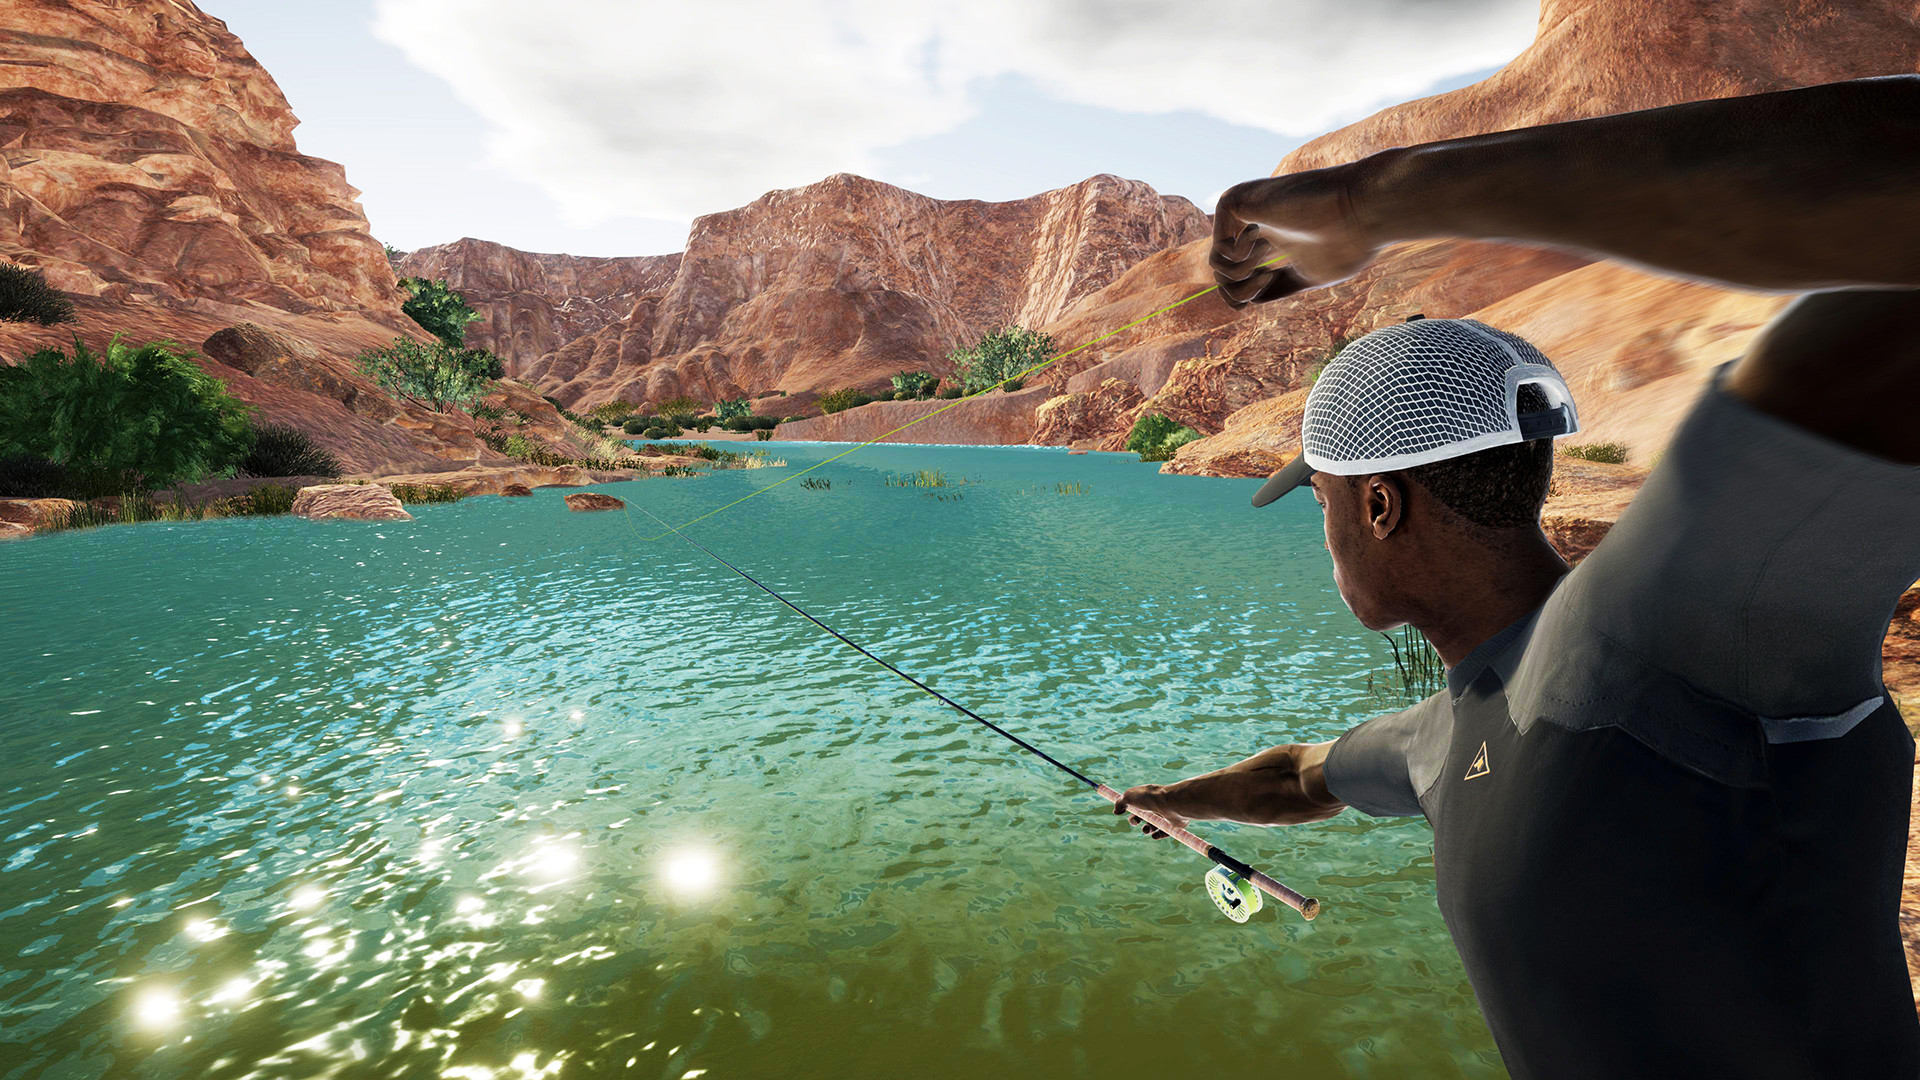 Скриншот *Pro Fishing Simulator [PS4] 6.72 / 7.02 [EUR] (2018) [Английский] (v1.04)*